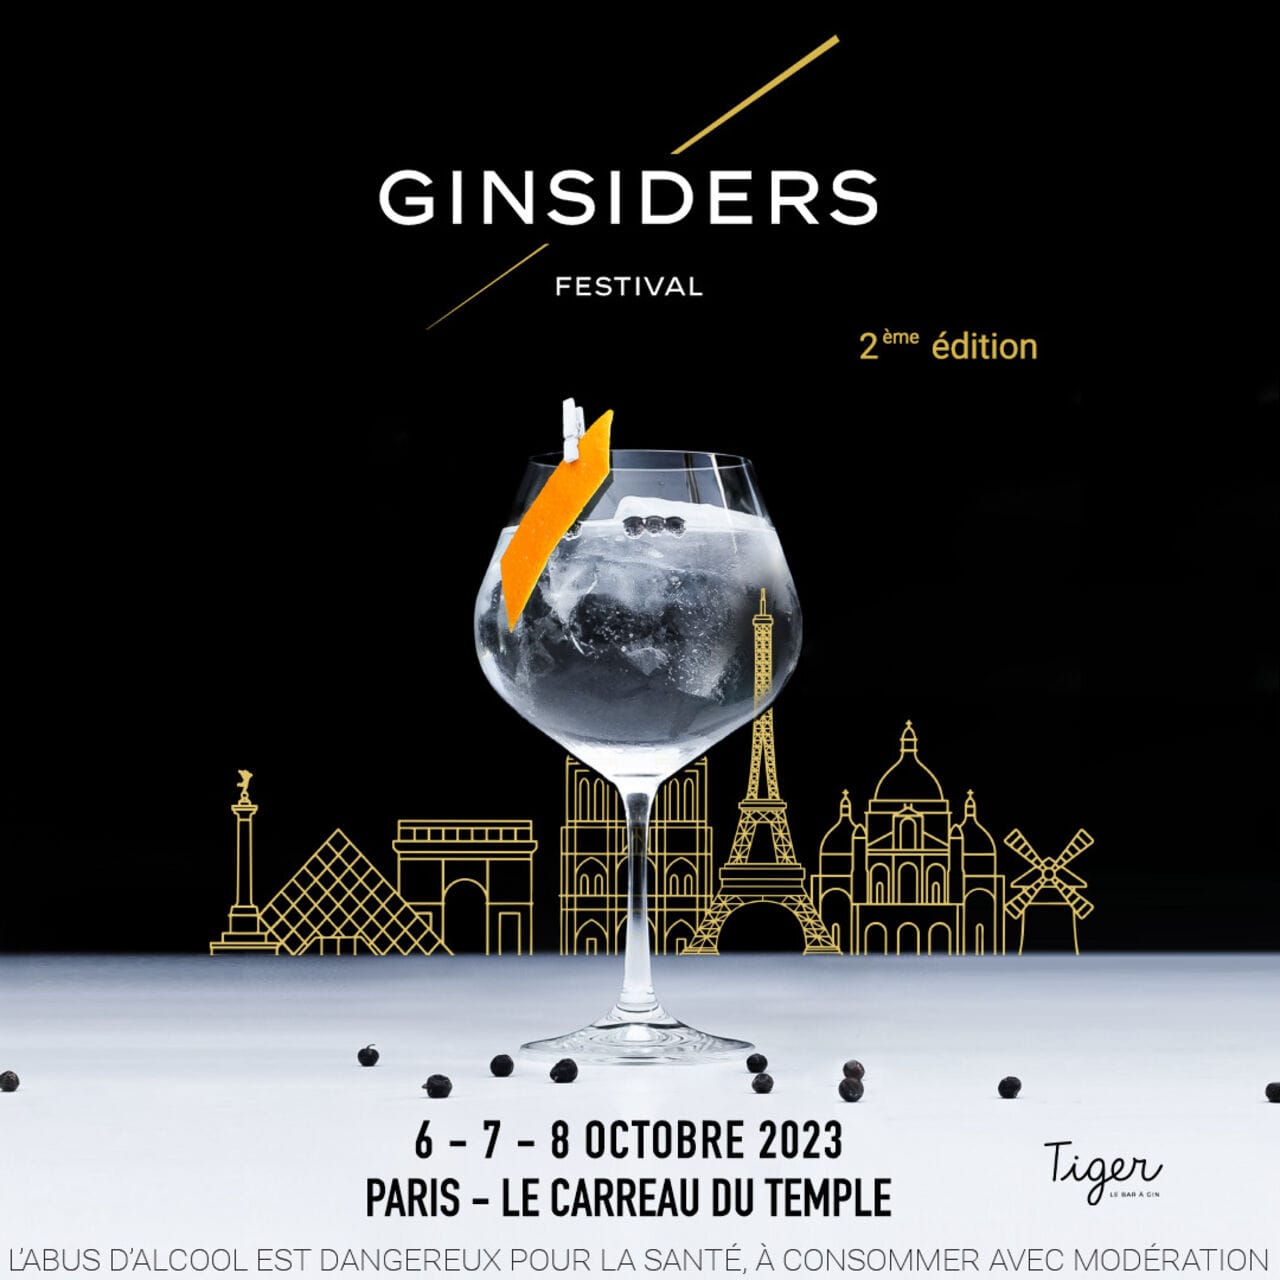 Ginsiders revient à Paris au Carreau du Temple du 6 au 8 octobre 2023